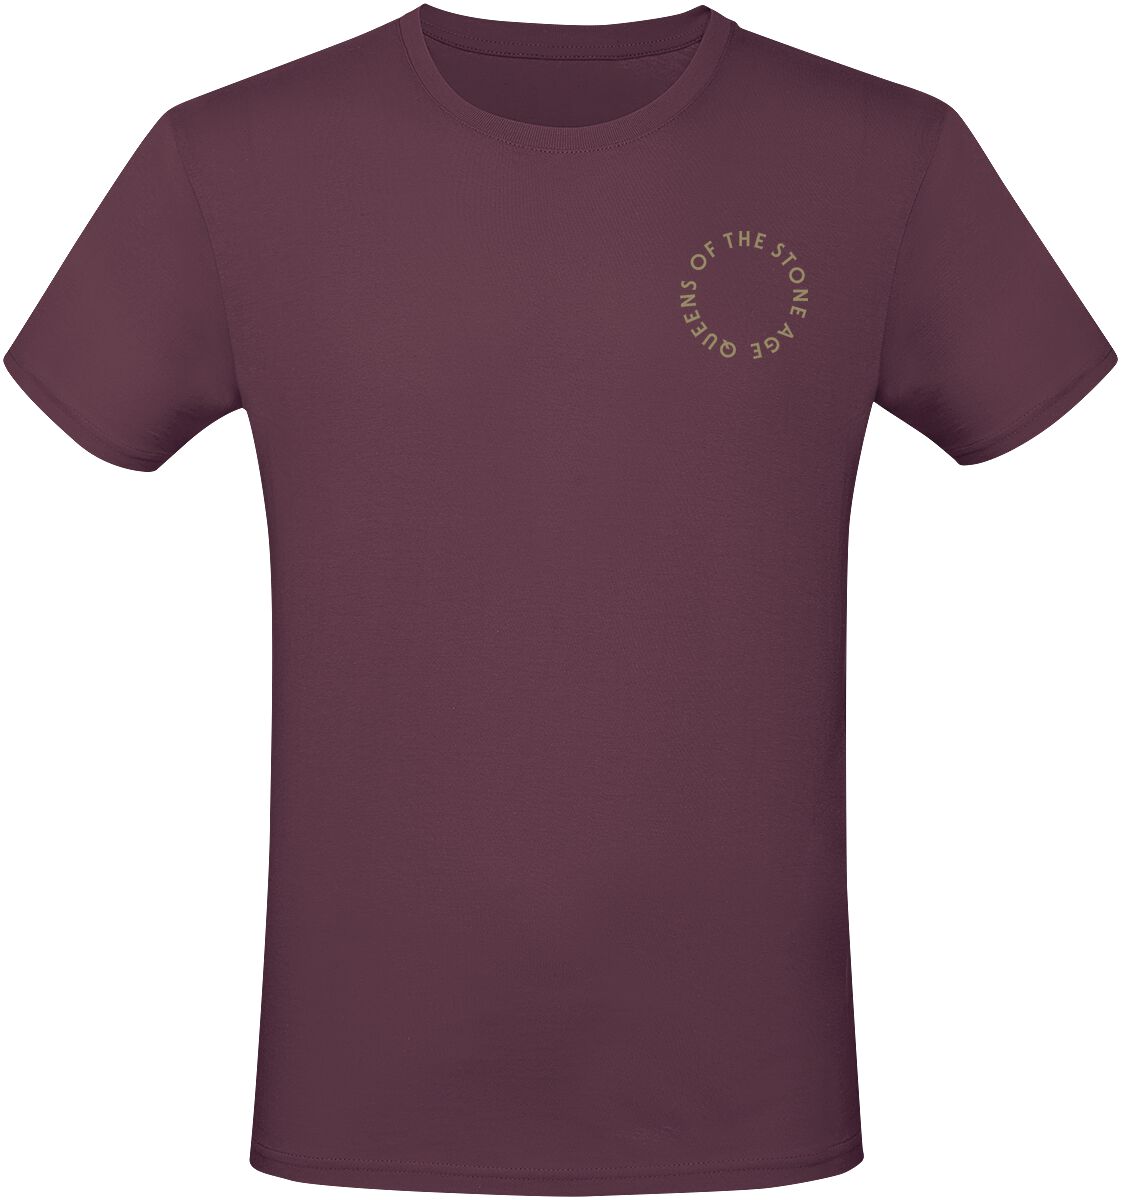 Queens Of The Stone Age T-Shirt - In Times New Roman - Snakes - S bis 3XL - für Männer - Größe 3XL - burgund  - Lizenziertes Merchandise!